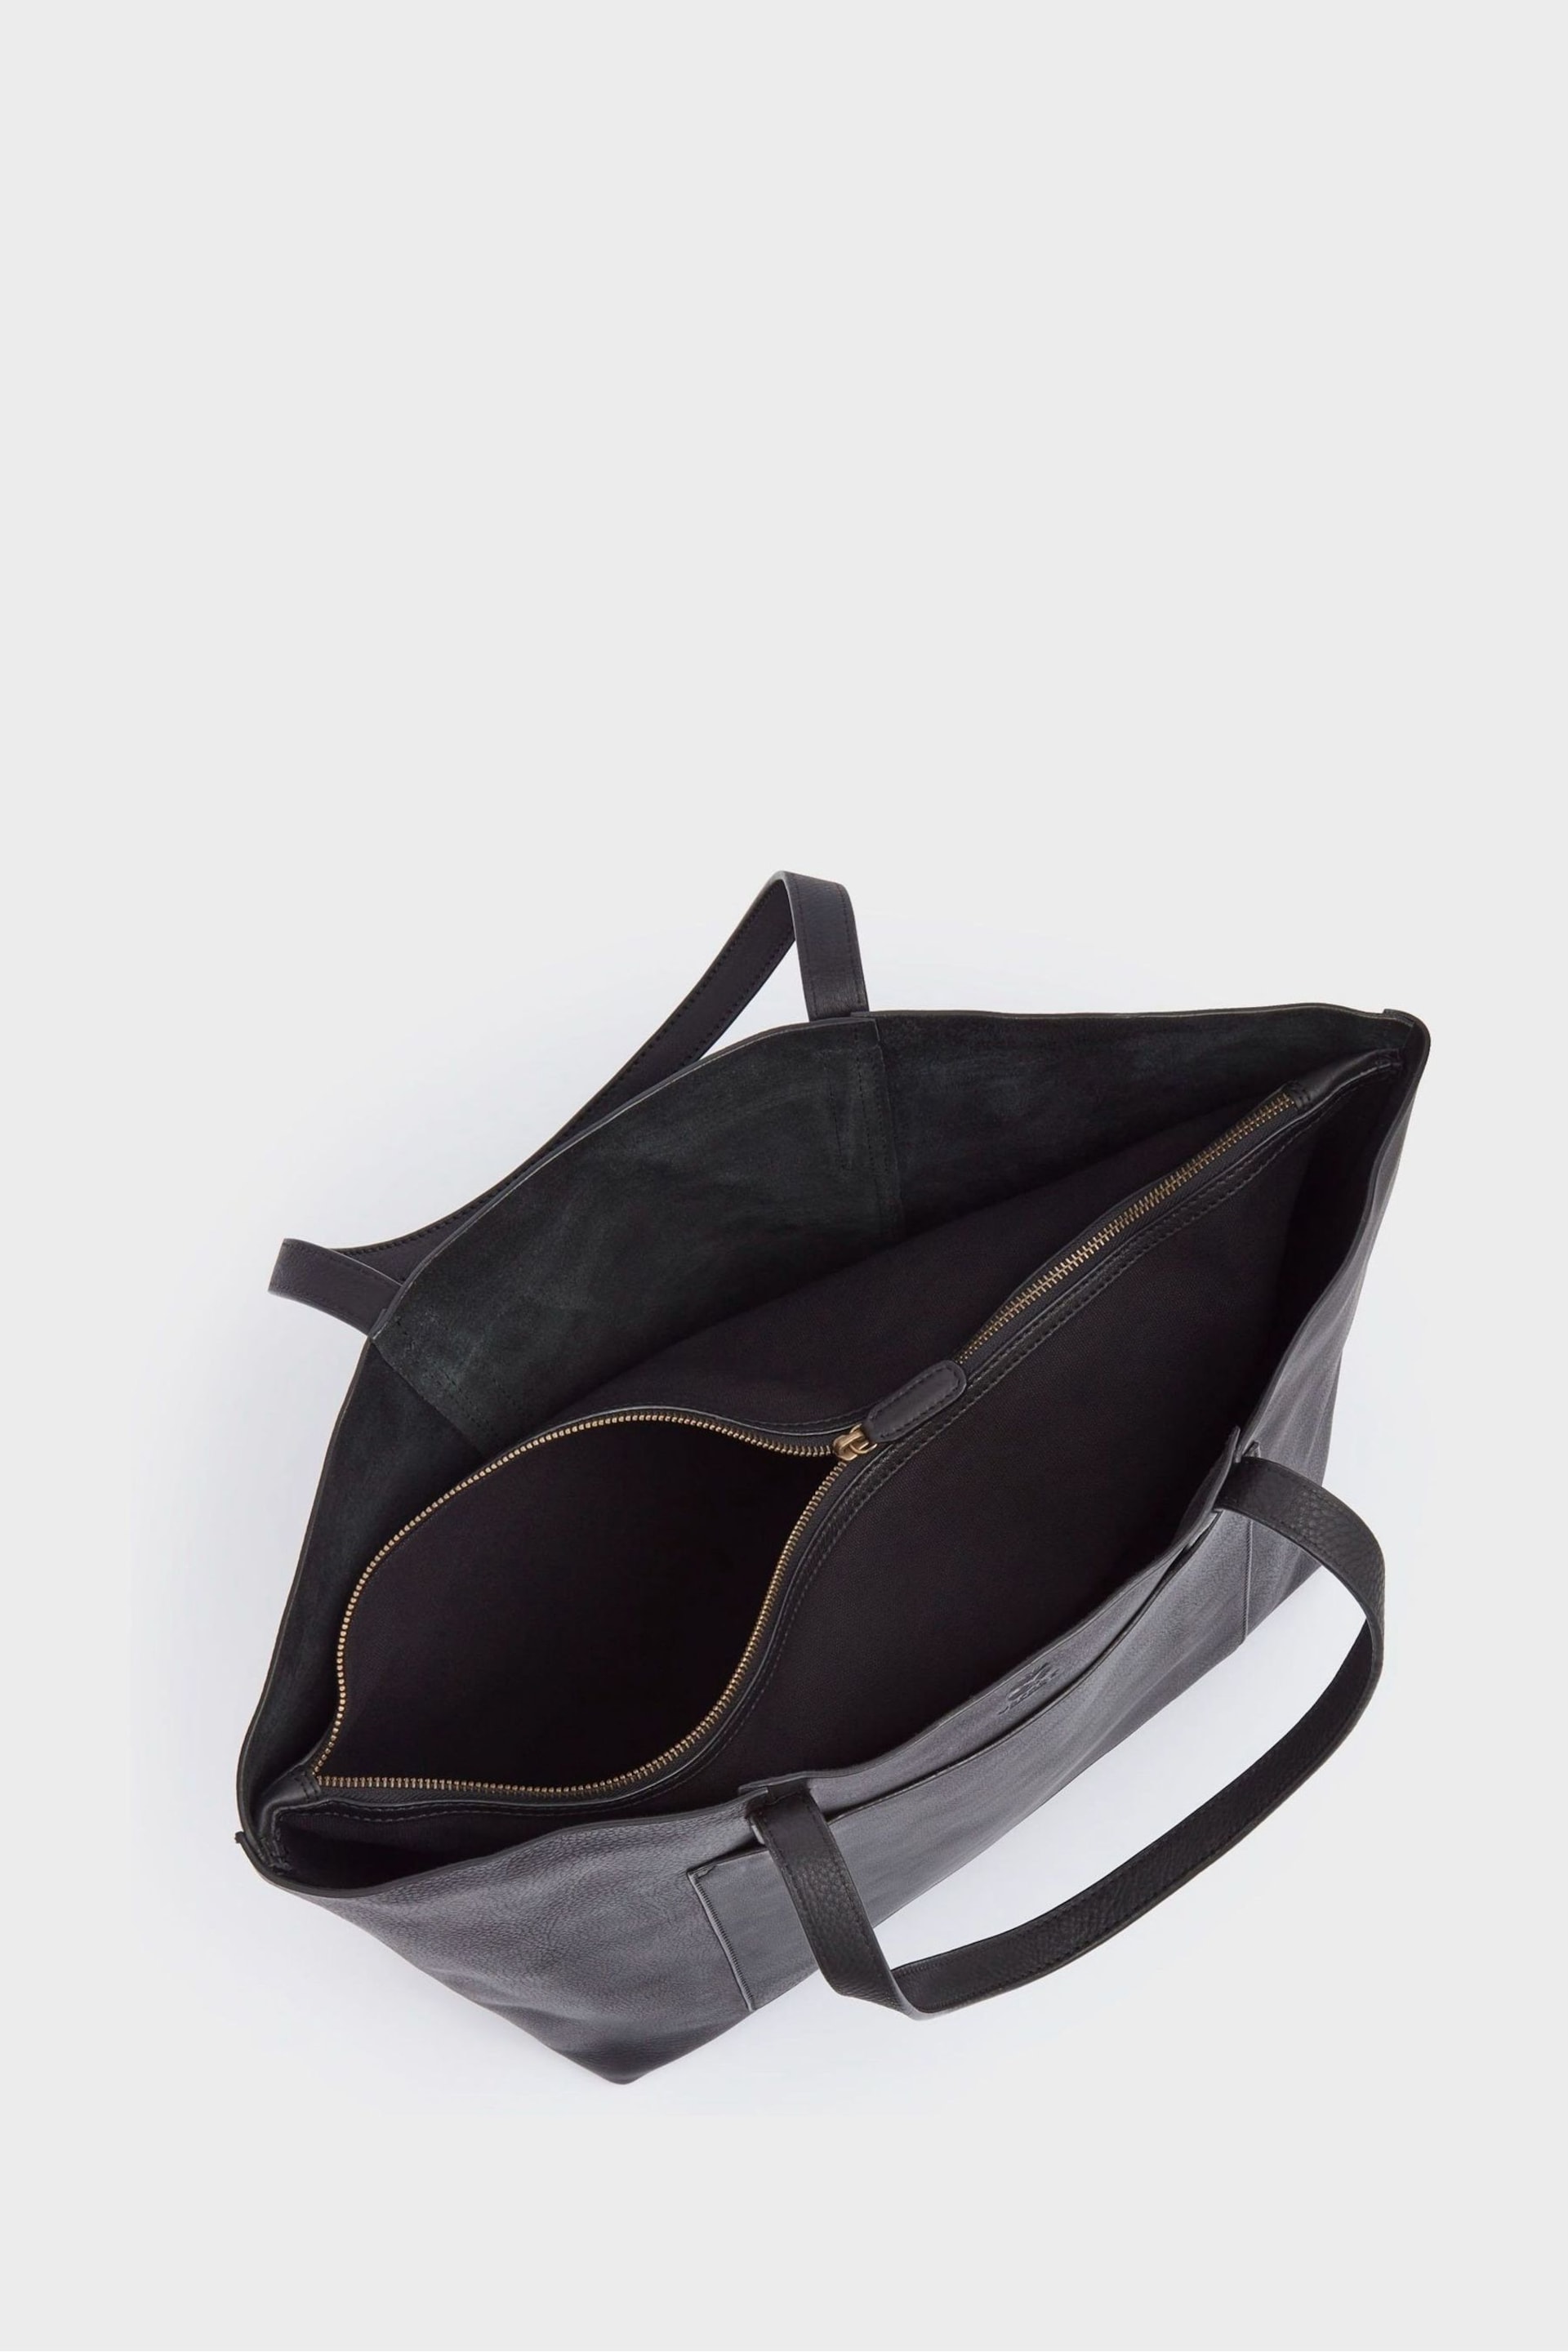 OSPREY LONDON The Vintage Leather Santa Fe Black Tote Bag - Image 4 of 6